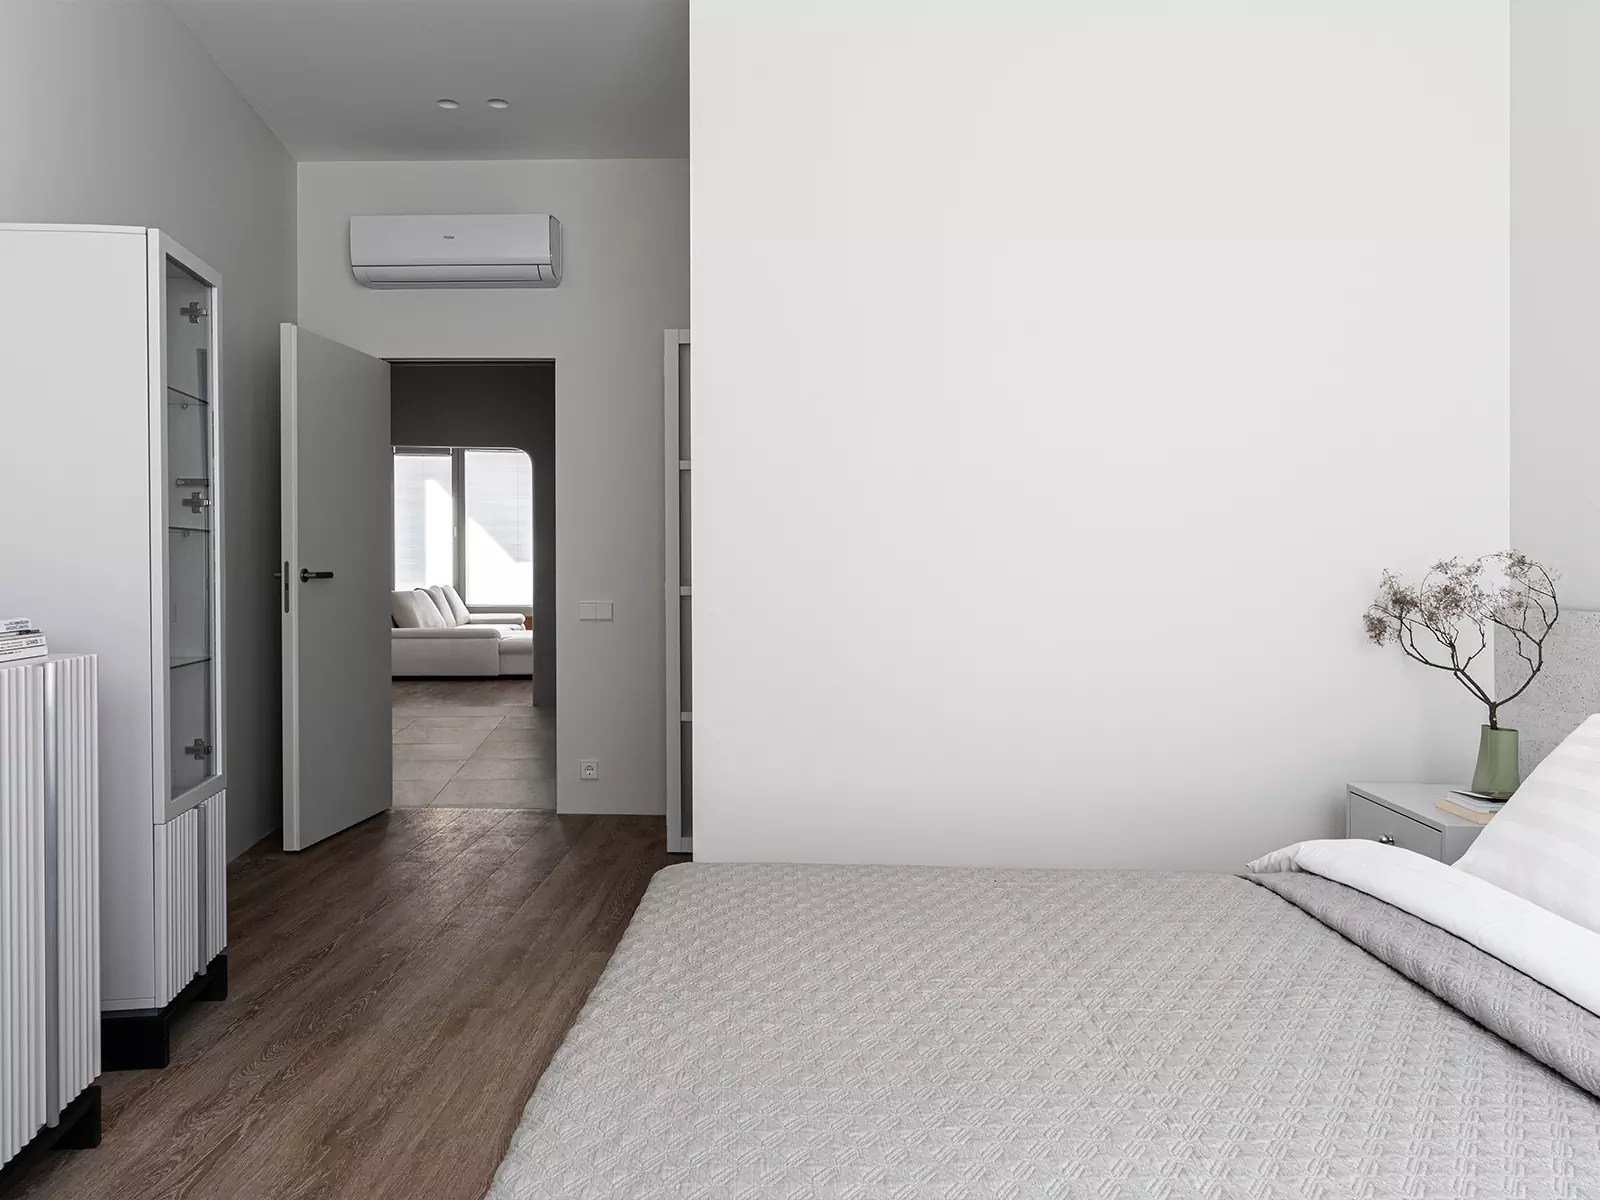 Лаконичный интерьер квартиры со сложной геометрией с акцентным санузлом — проект студии Пора